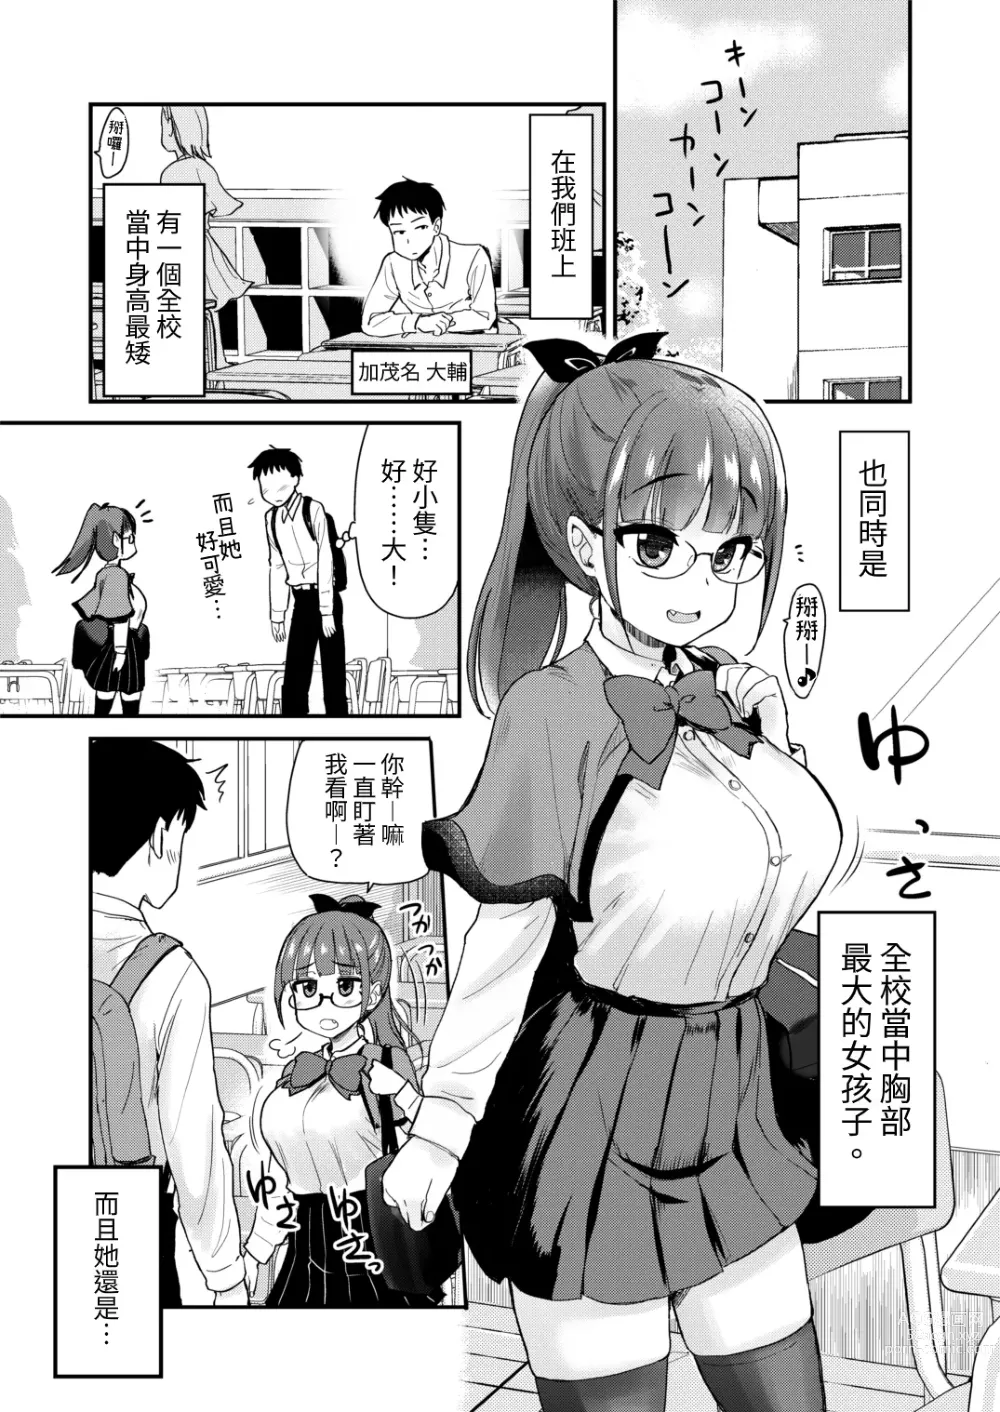 Page 3 of doujinshi 沒有血緣的姊姊認為弟弟的性慾處理是姊姊的責任。